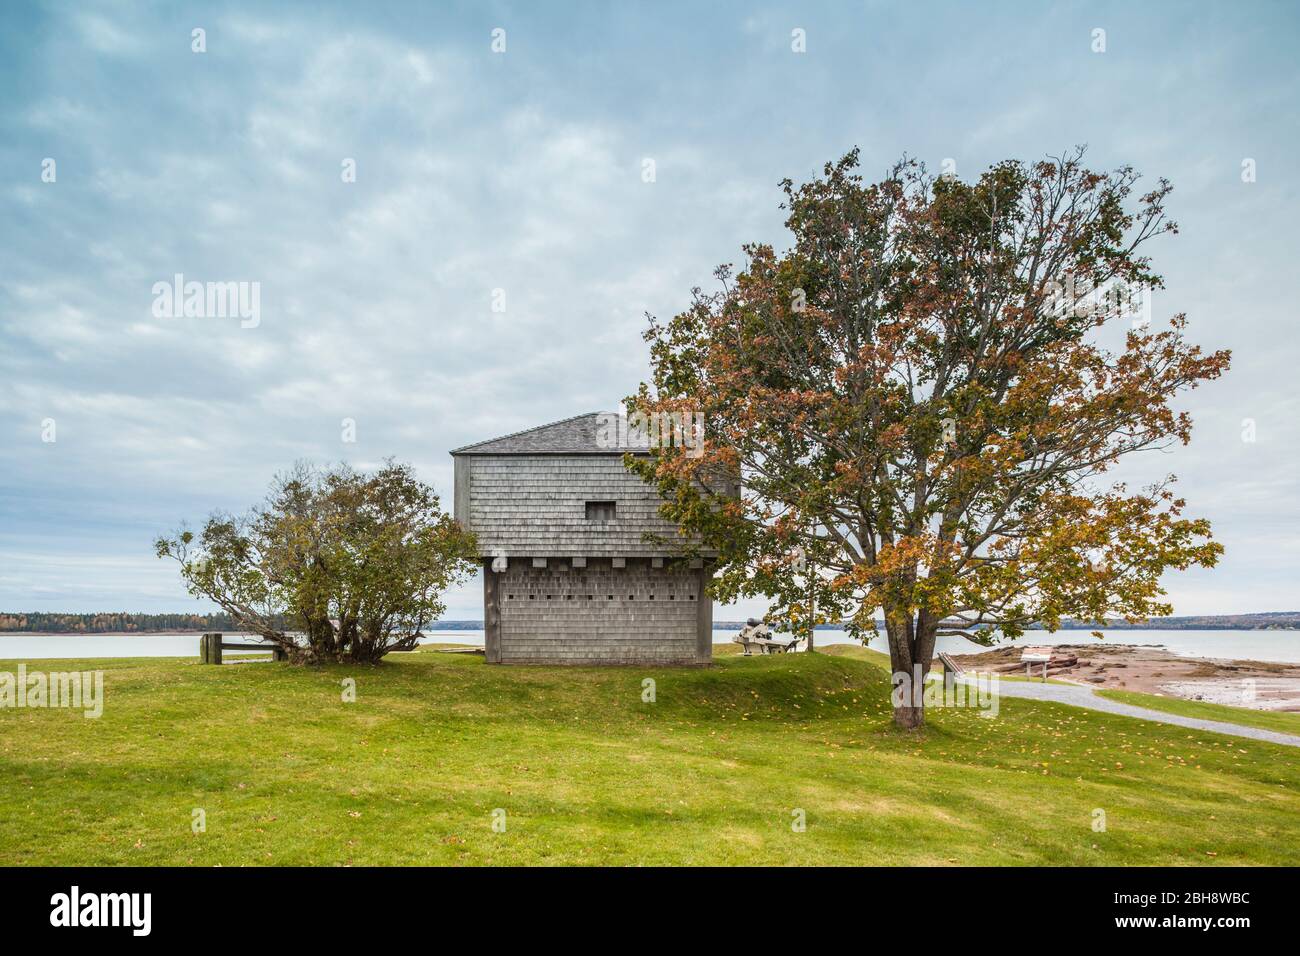 Kanada, New Brunswick, Bucht von Fundy, St. Andrews by the Sea, St. Andrews Blockhouse, militärische Festung aus dem Krieg von 1812, außen Stockfoto